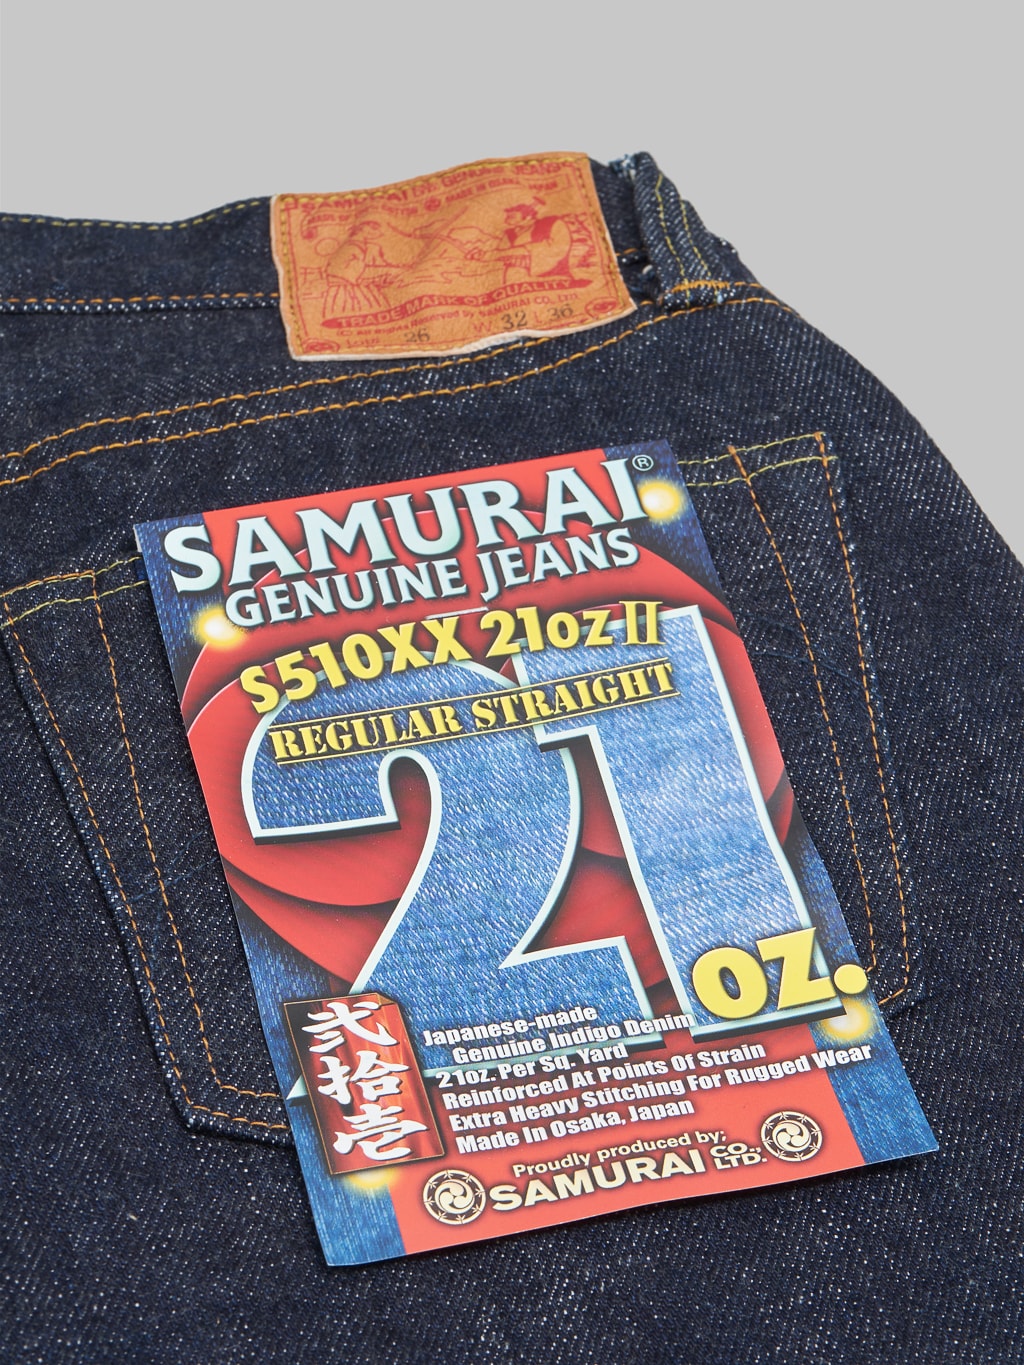 Samurai Jeans S510XX21ozII Cho Kiwami 21oz Regular Straight Jeans pocket flasher